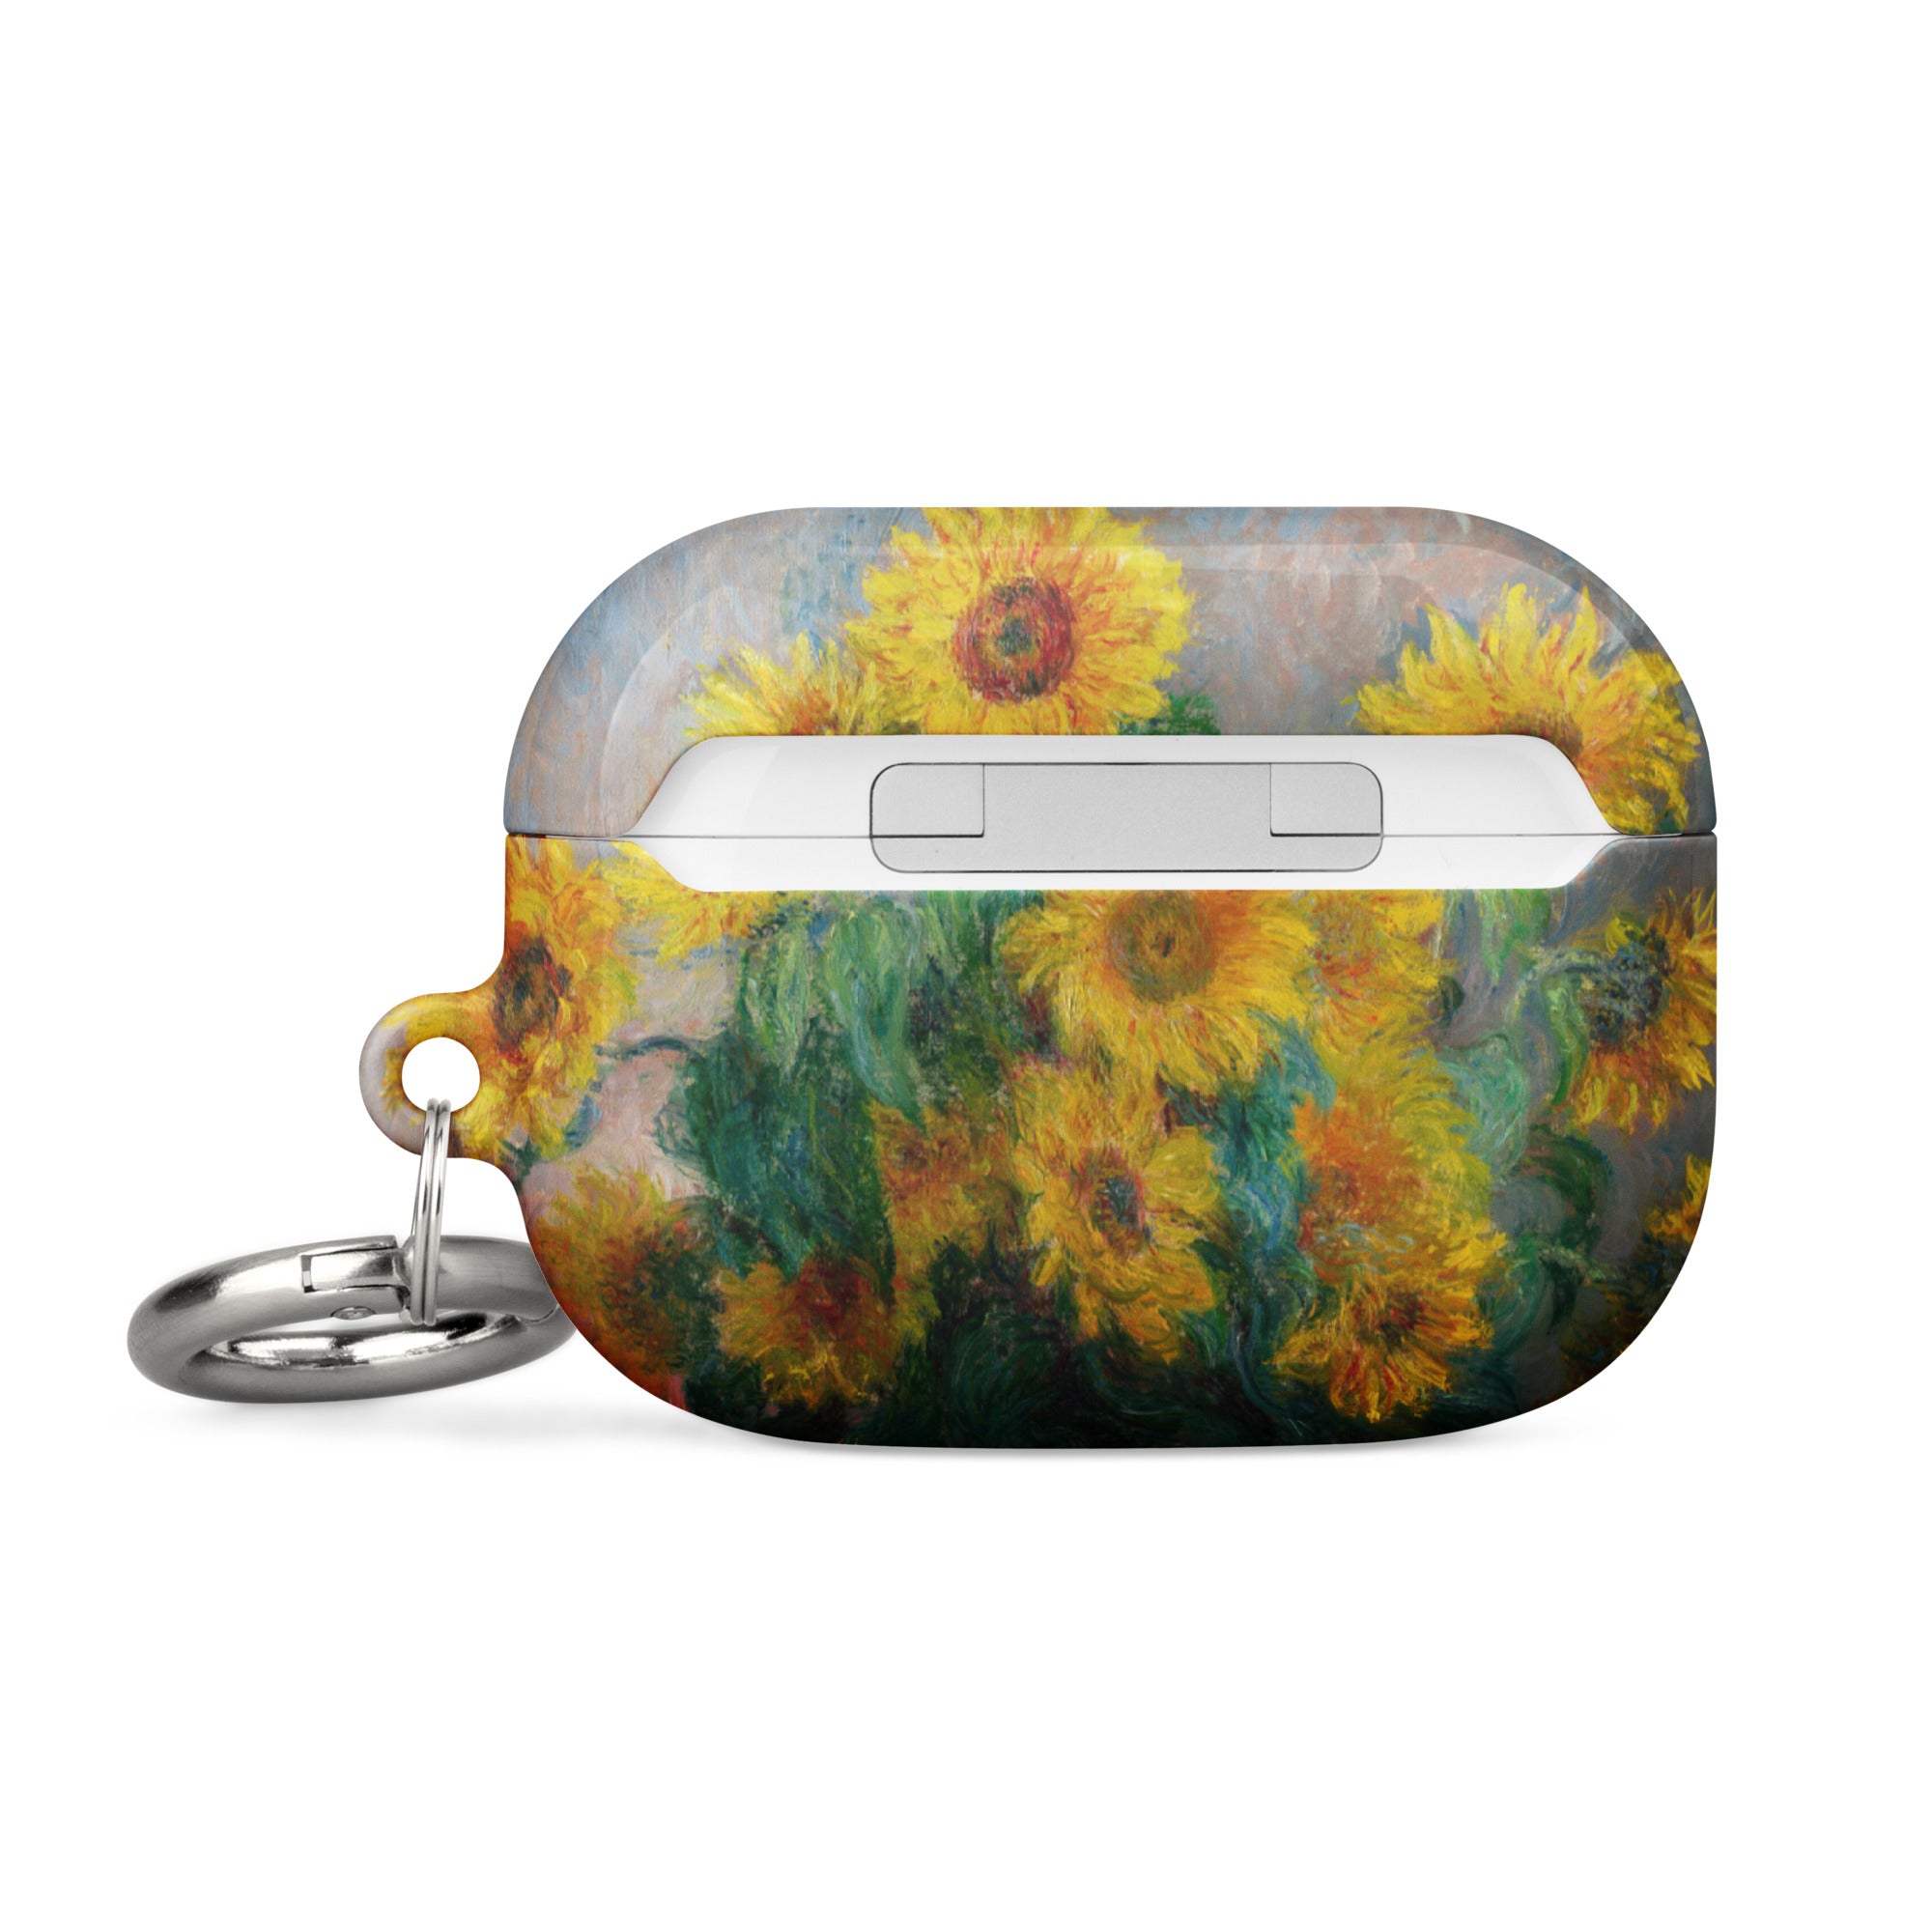 Claude Monet „Sonnenblumenstrauß“, berühmtes Gemälde, AirPods®-Hülle | Premium-Kunsthülle für AirPods® 